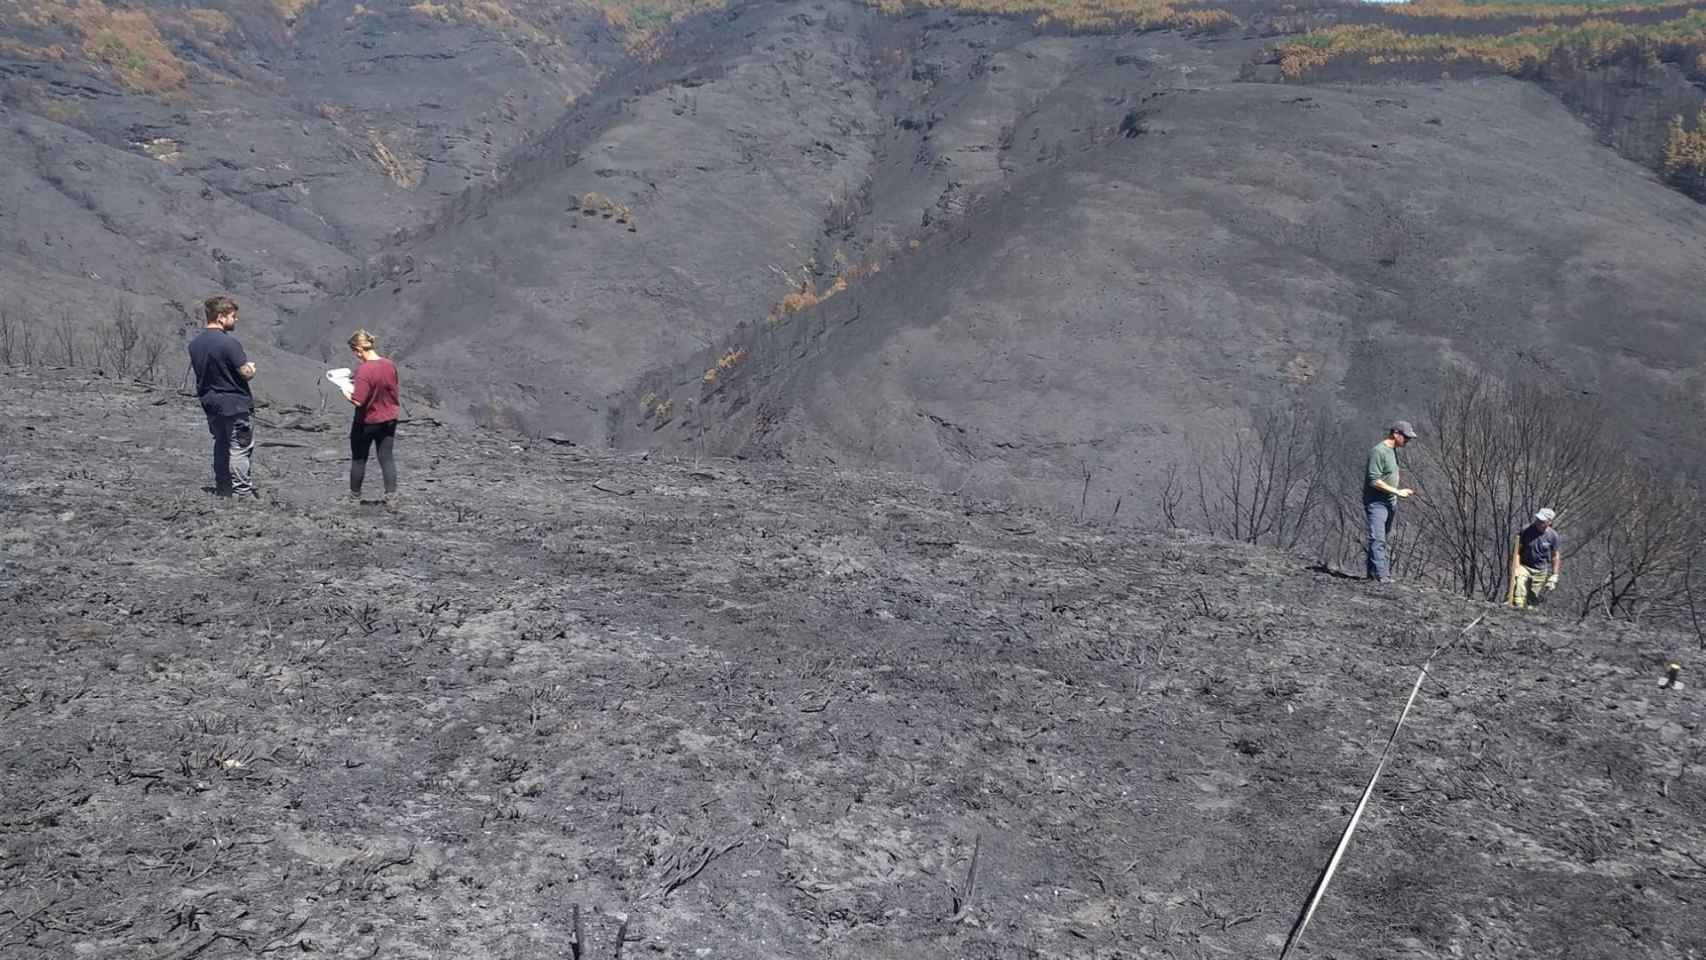 Técnicos del Centro de Investigación Forestal de Lourizán (Pontevedra) evalúan los daños en la Serra do Courel (Lugo) provocados por los incendios.